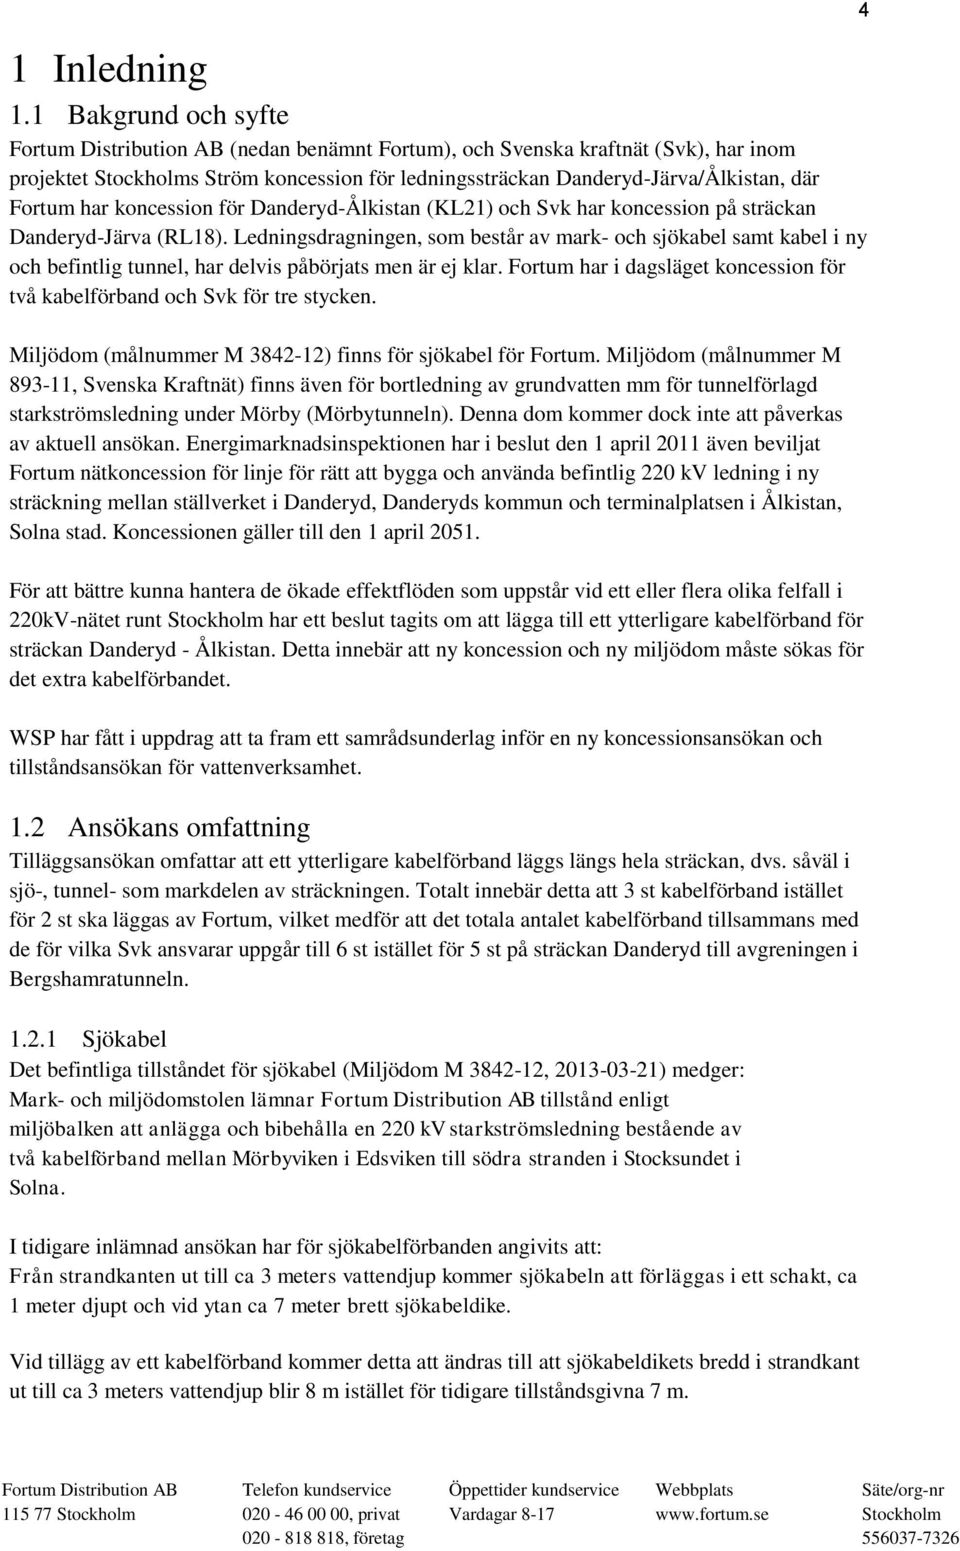 har koncession för Danderyd-Ålkistan (KL21) och Svk har koncession på sträckan Danderyd-Järva (RL18).